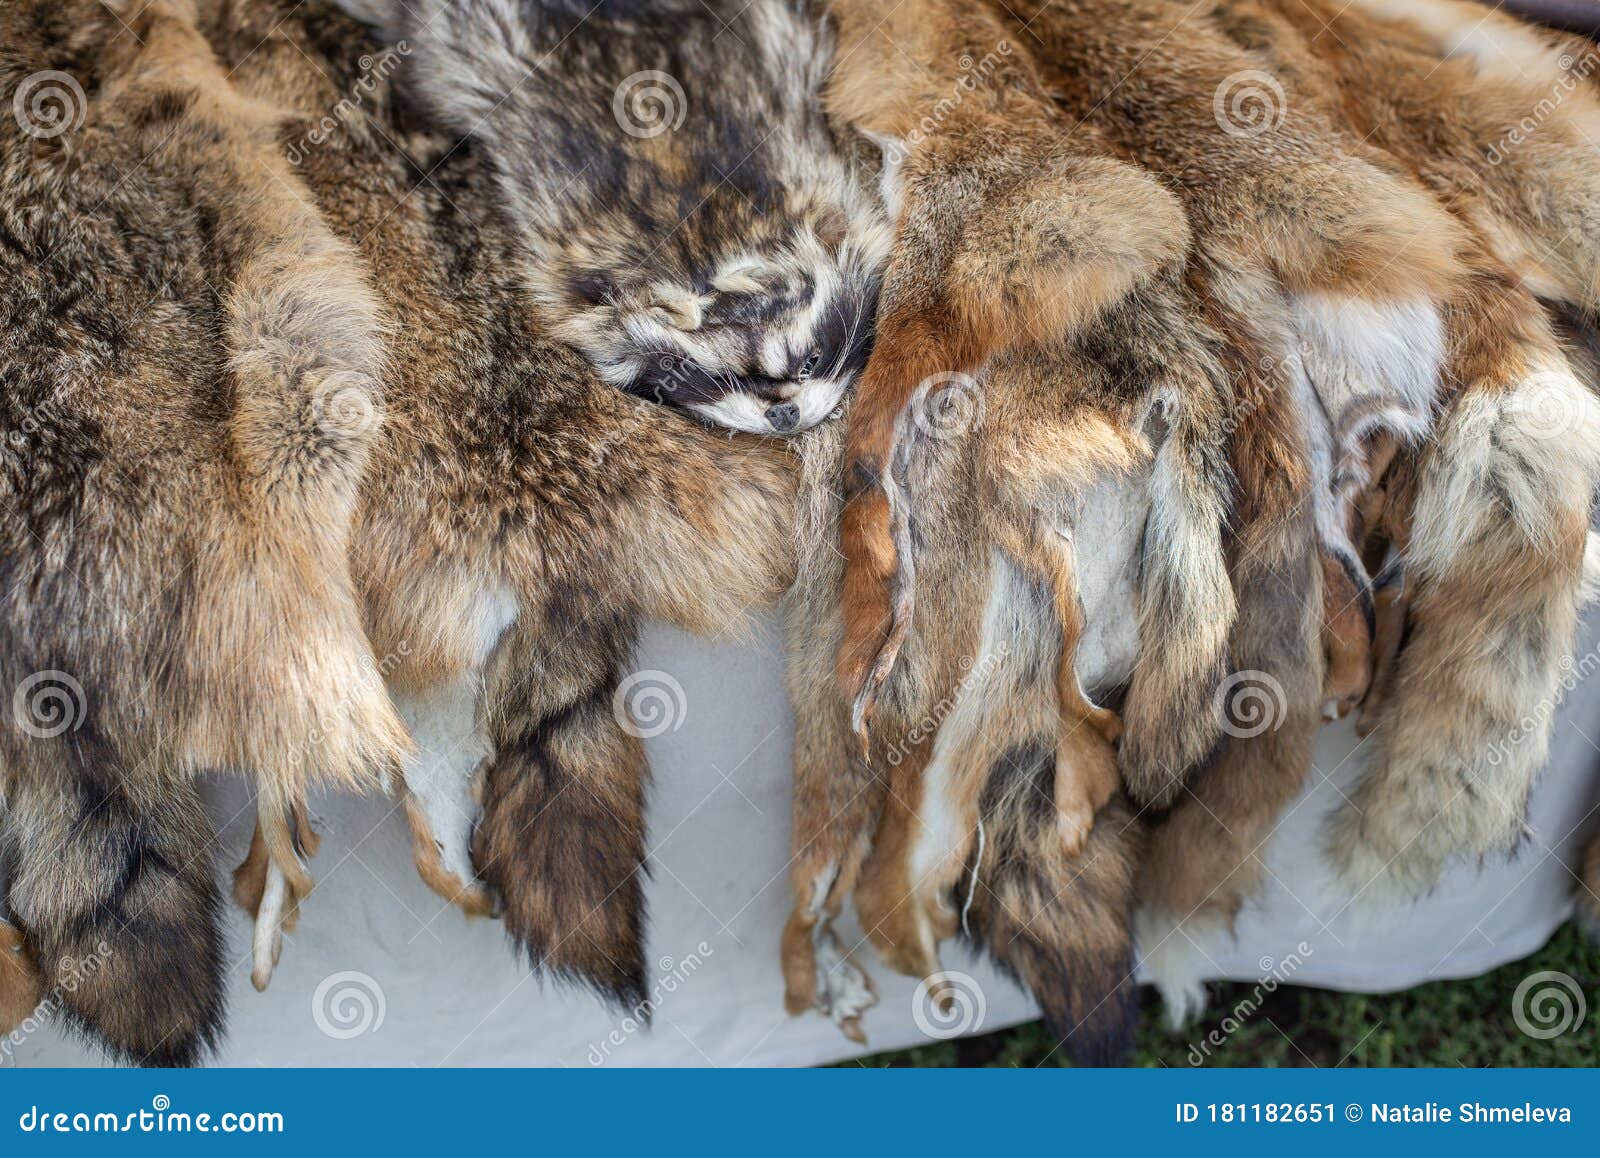 Animal skin fur stock image. Image of soft, animal, wild - 181182651